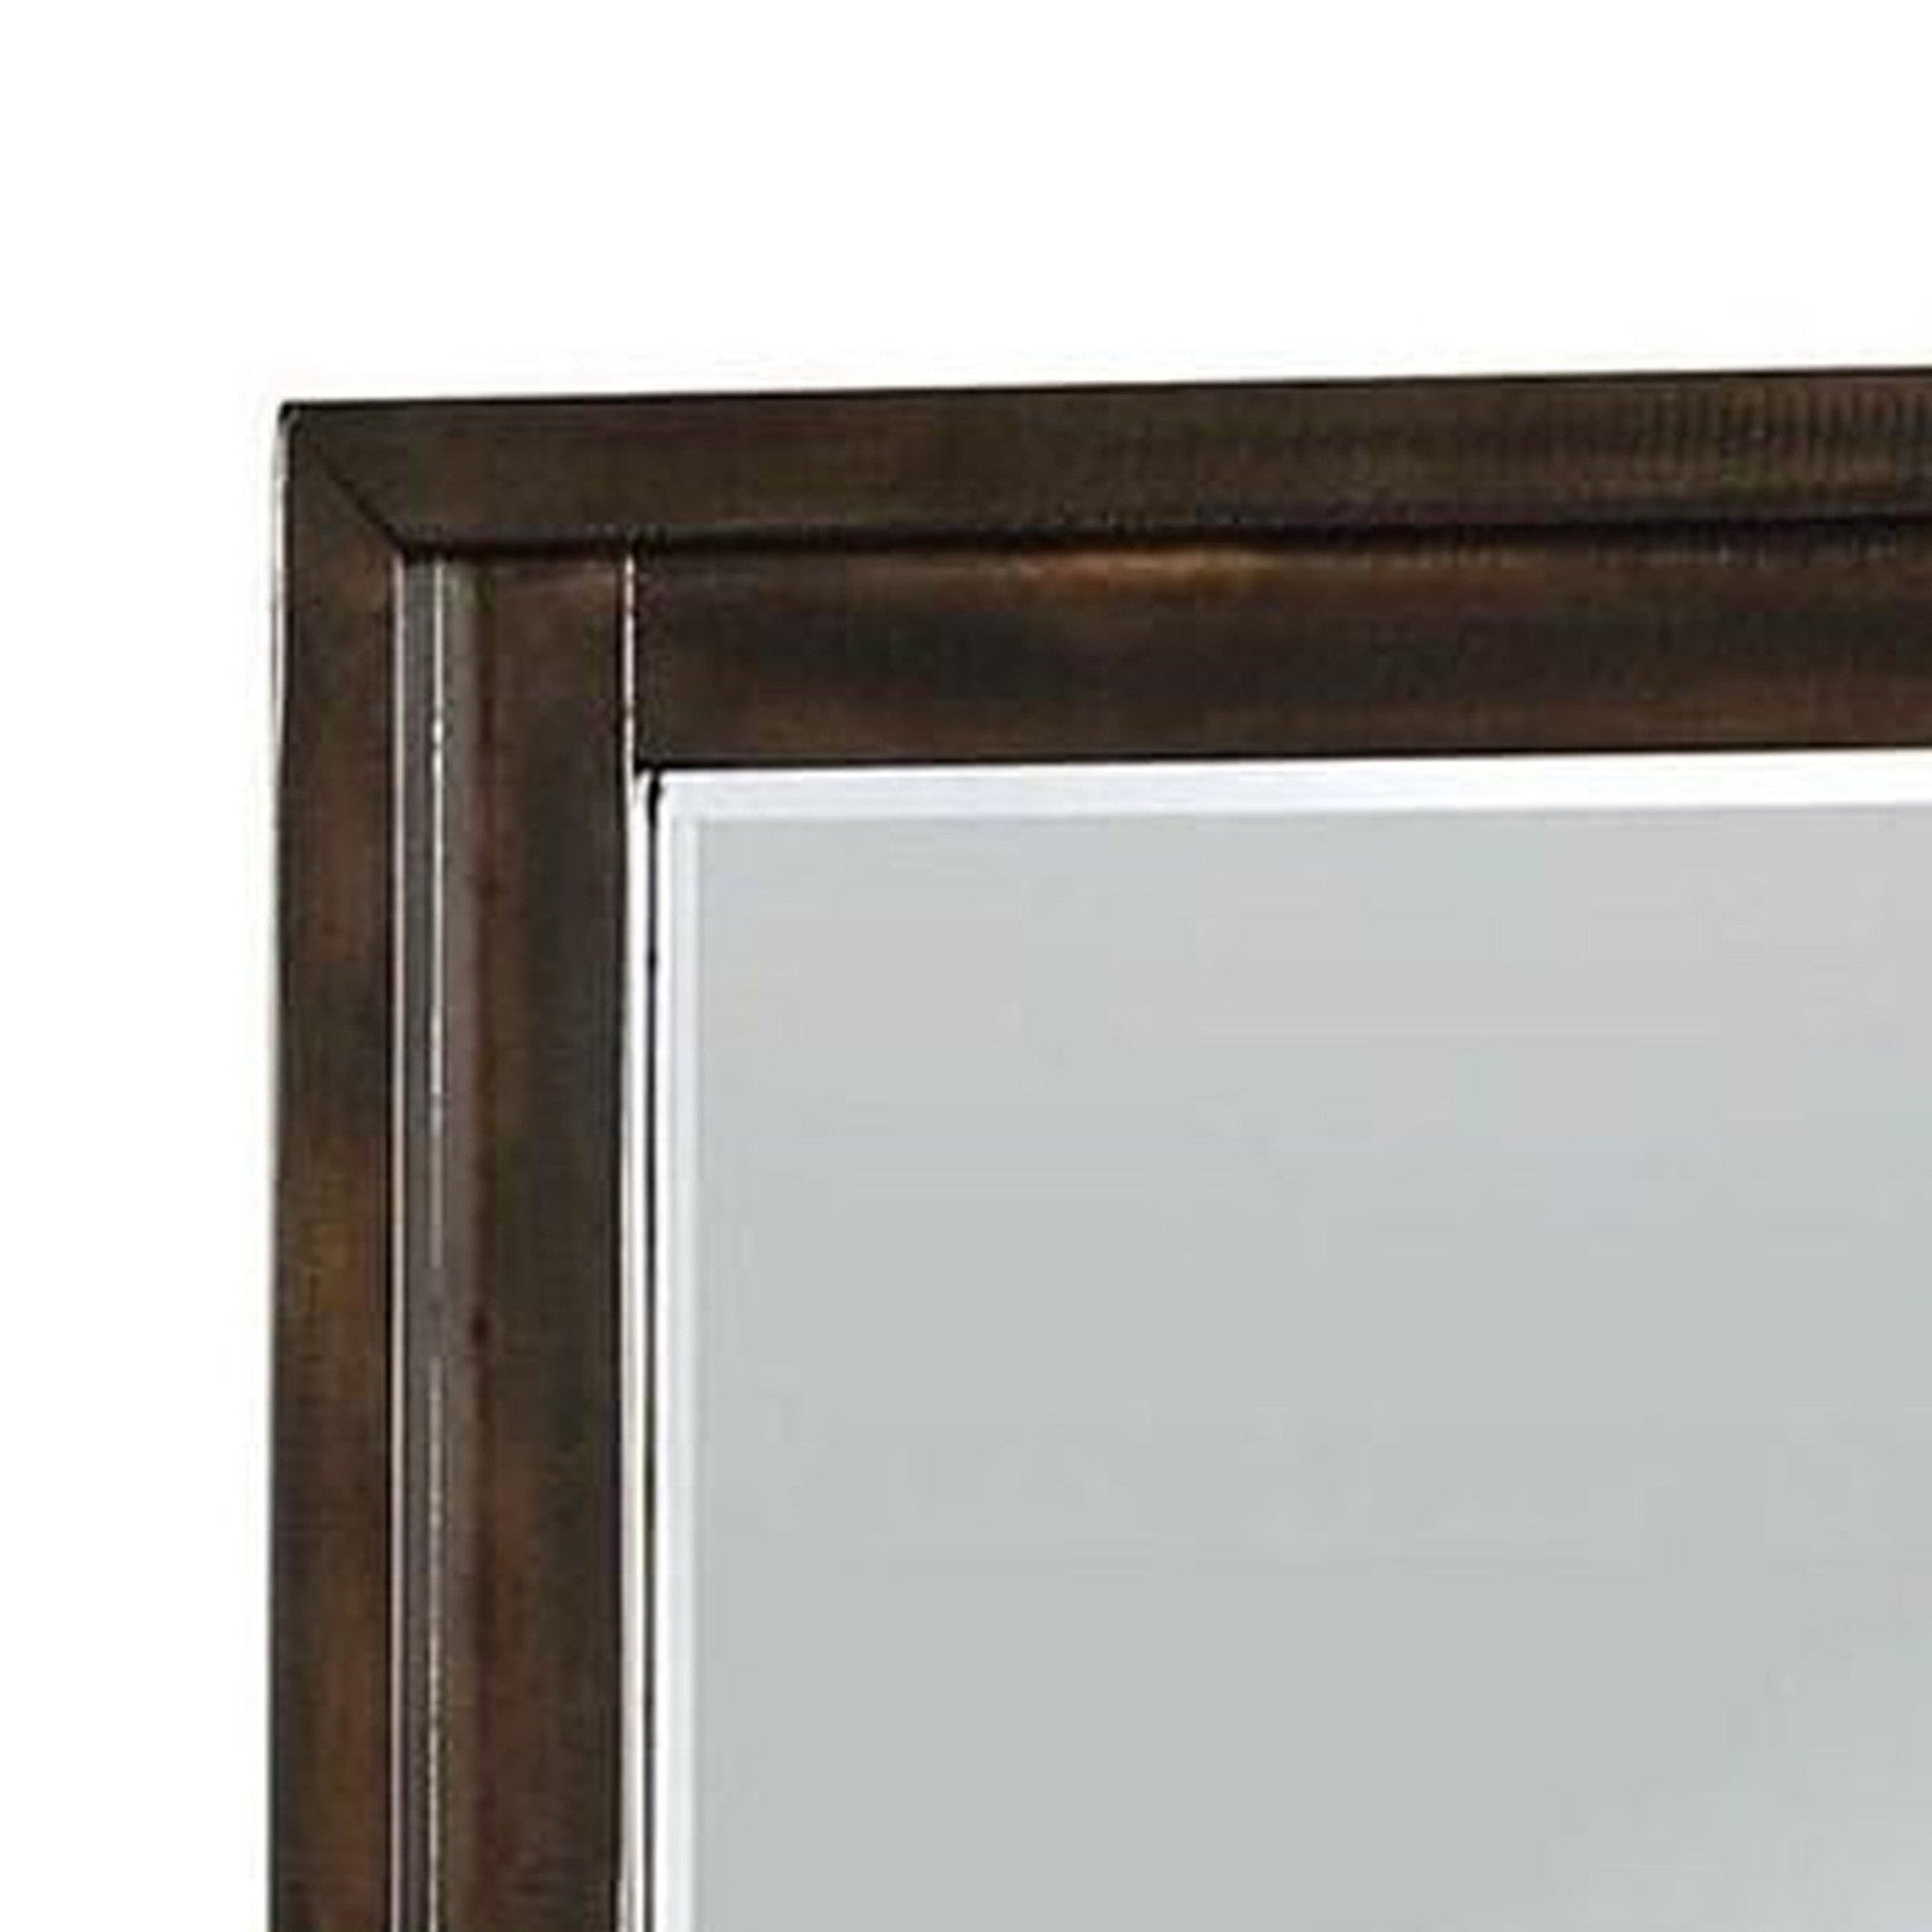 Benzara 46" Dark Brown Transitional Style Wooden Frame Mirror